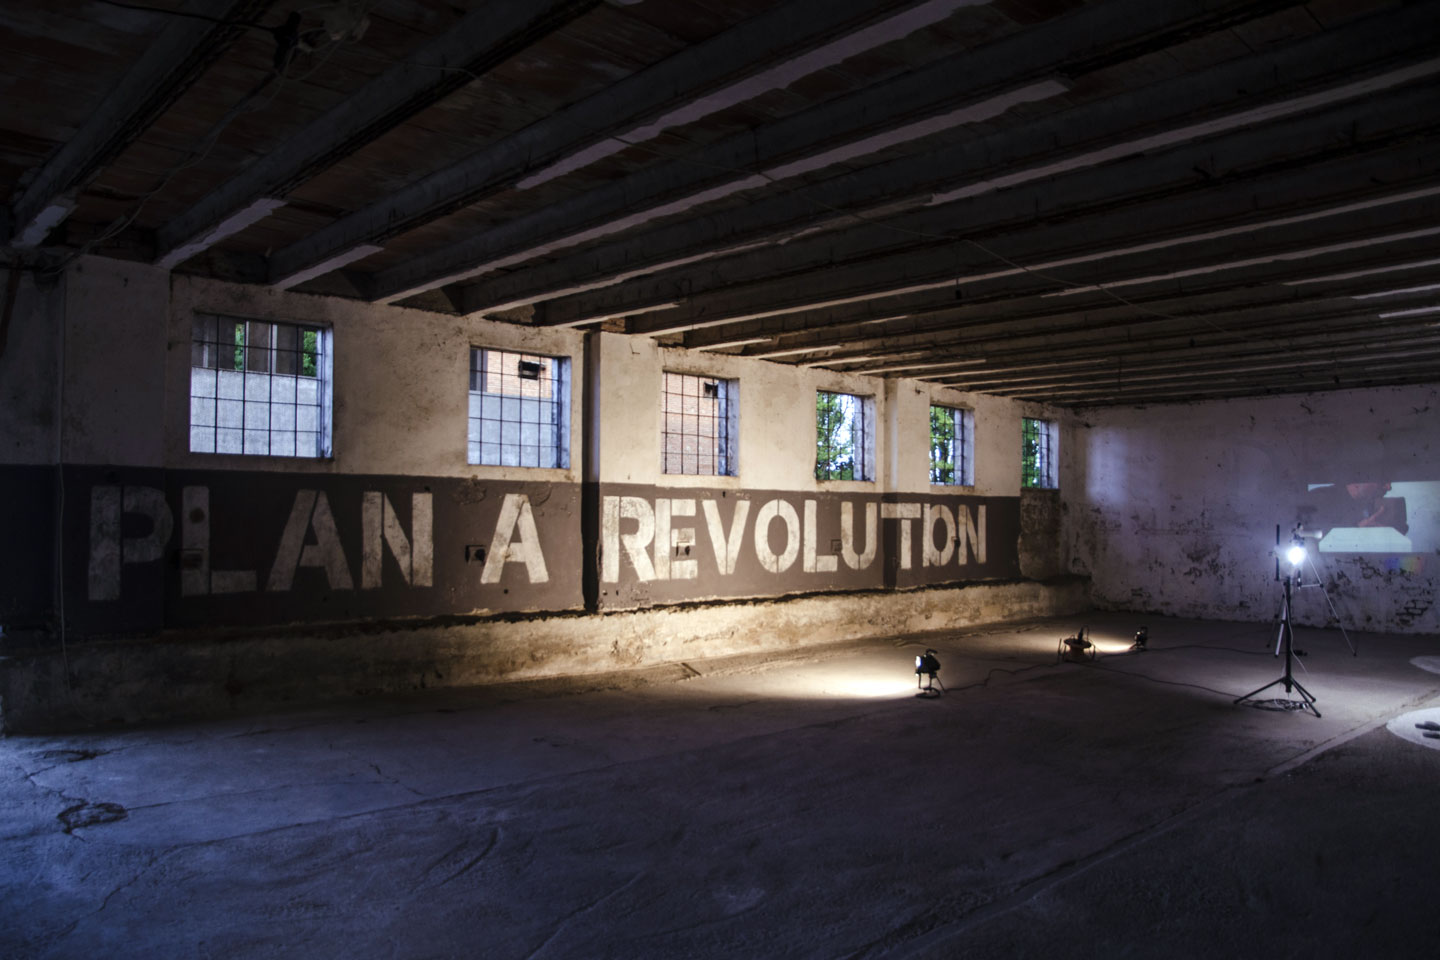 Tiziano Bellomi, “Plan a revolution”, 2017